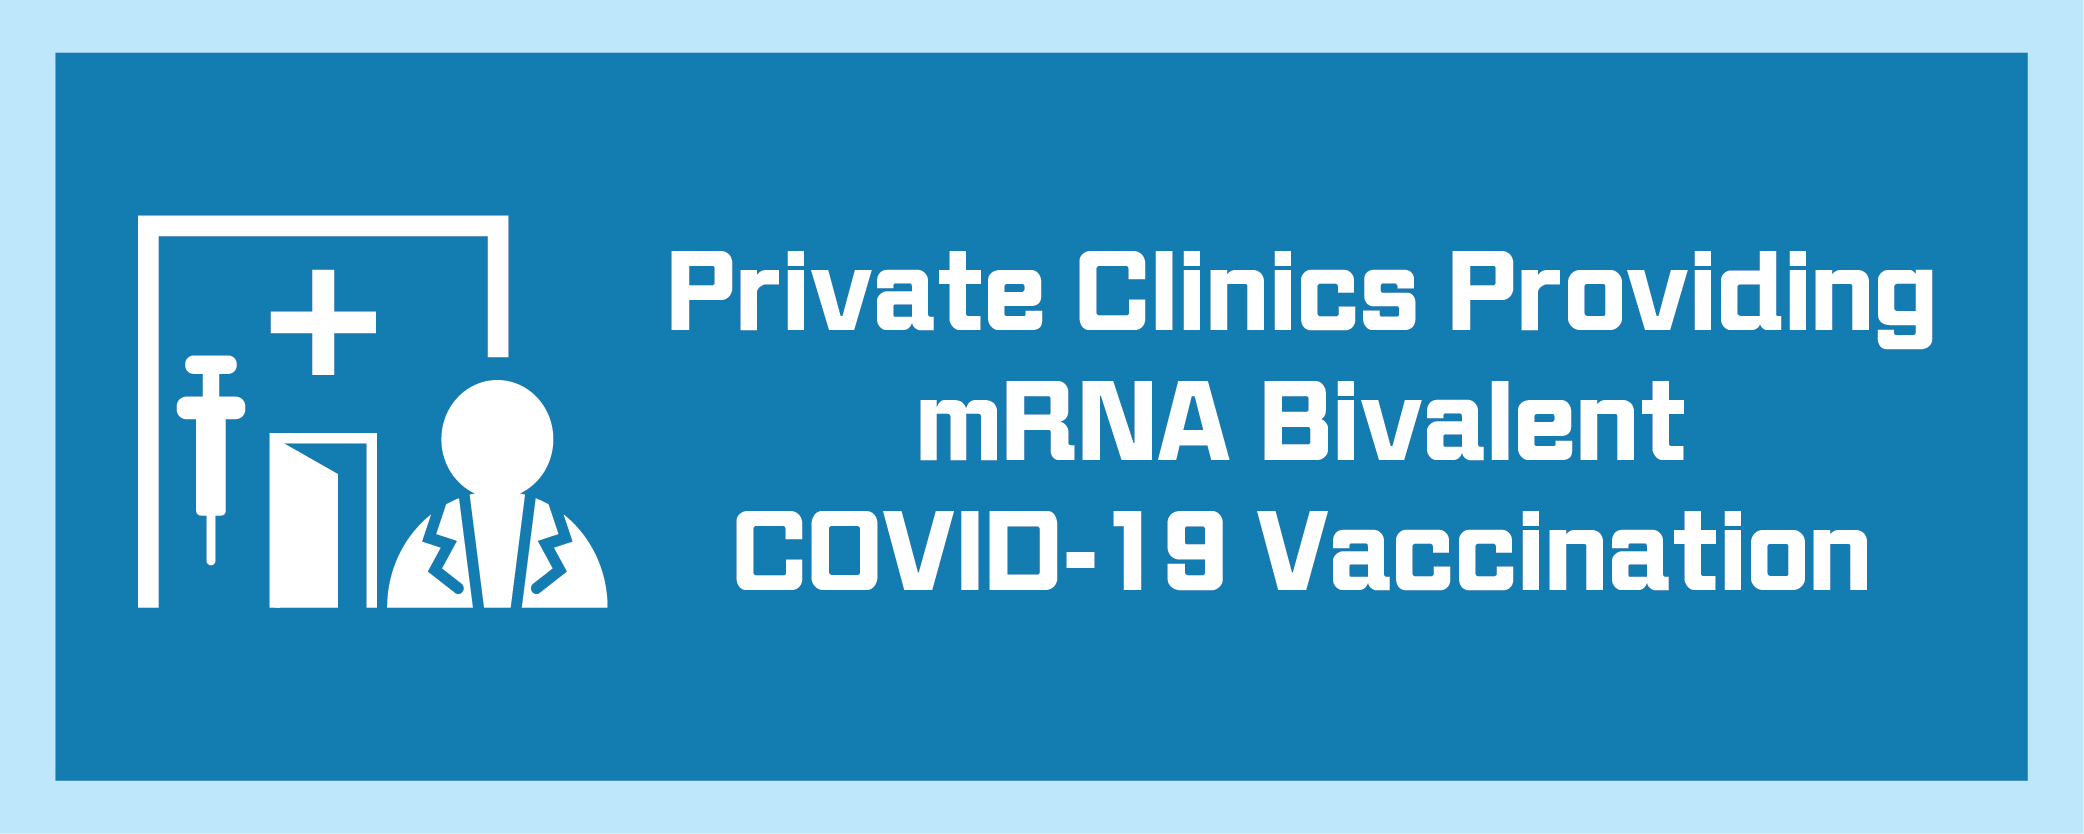 Private Clinics Providing mRNA Bivalent COVID-19 Vaccination 